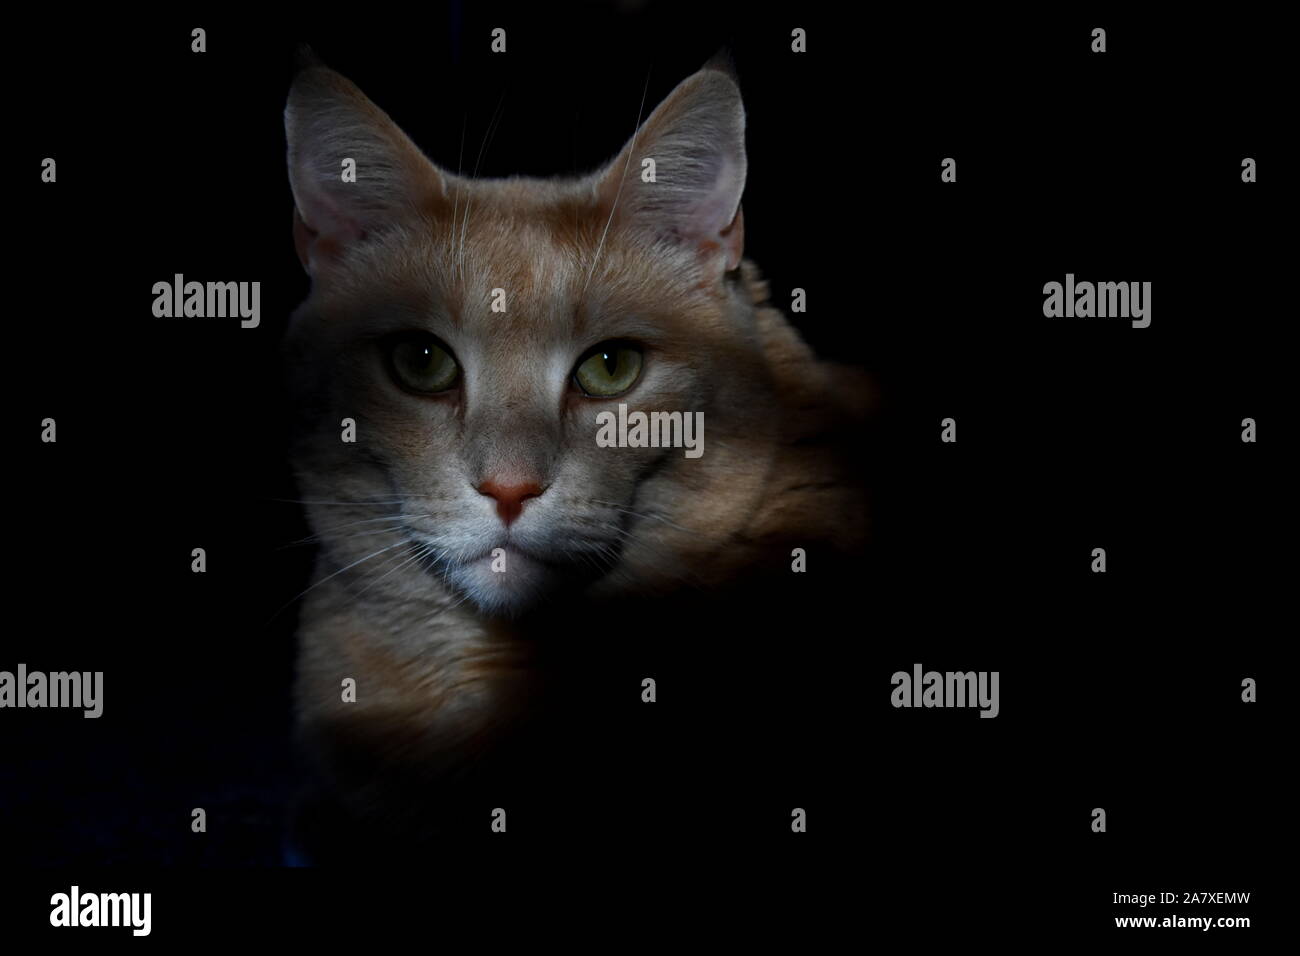 Shadowy Cat Portrait Stock Photo